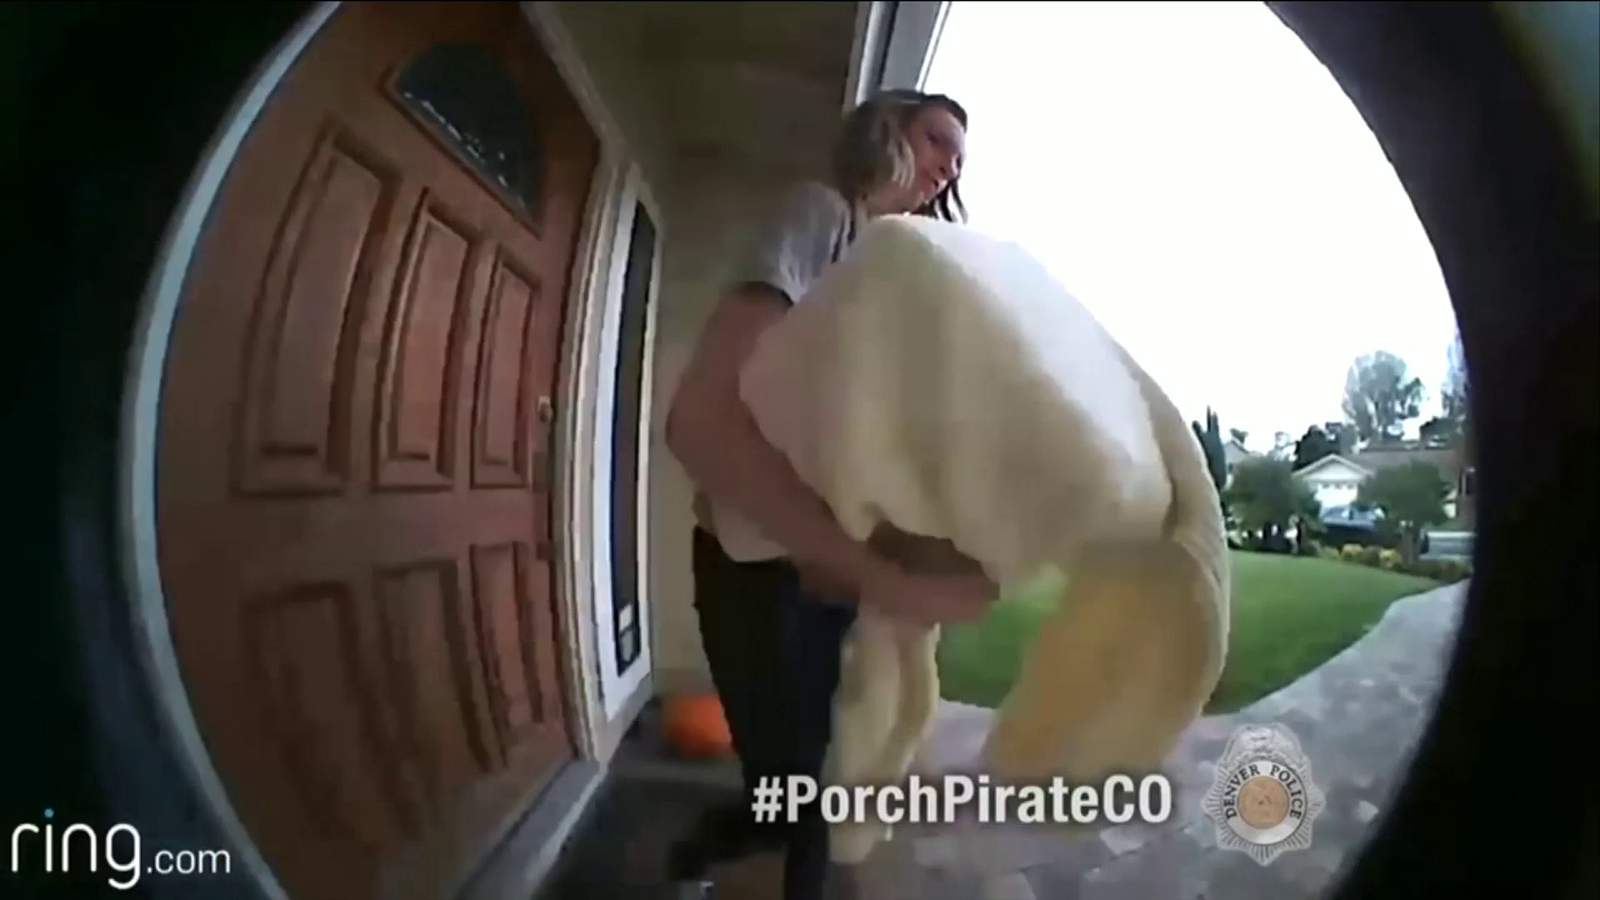 ’Tis the season for porch pirates